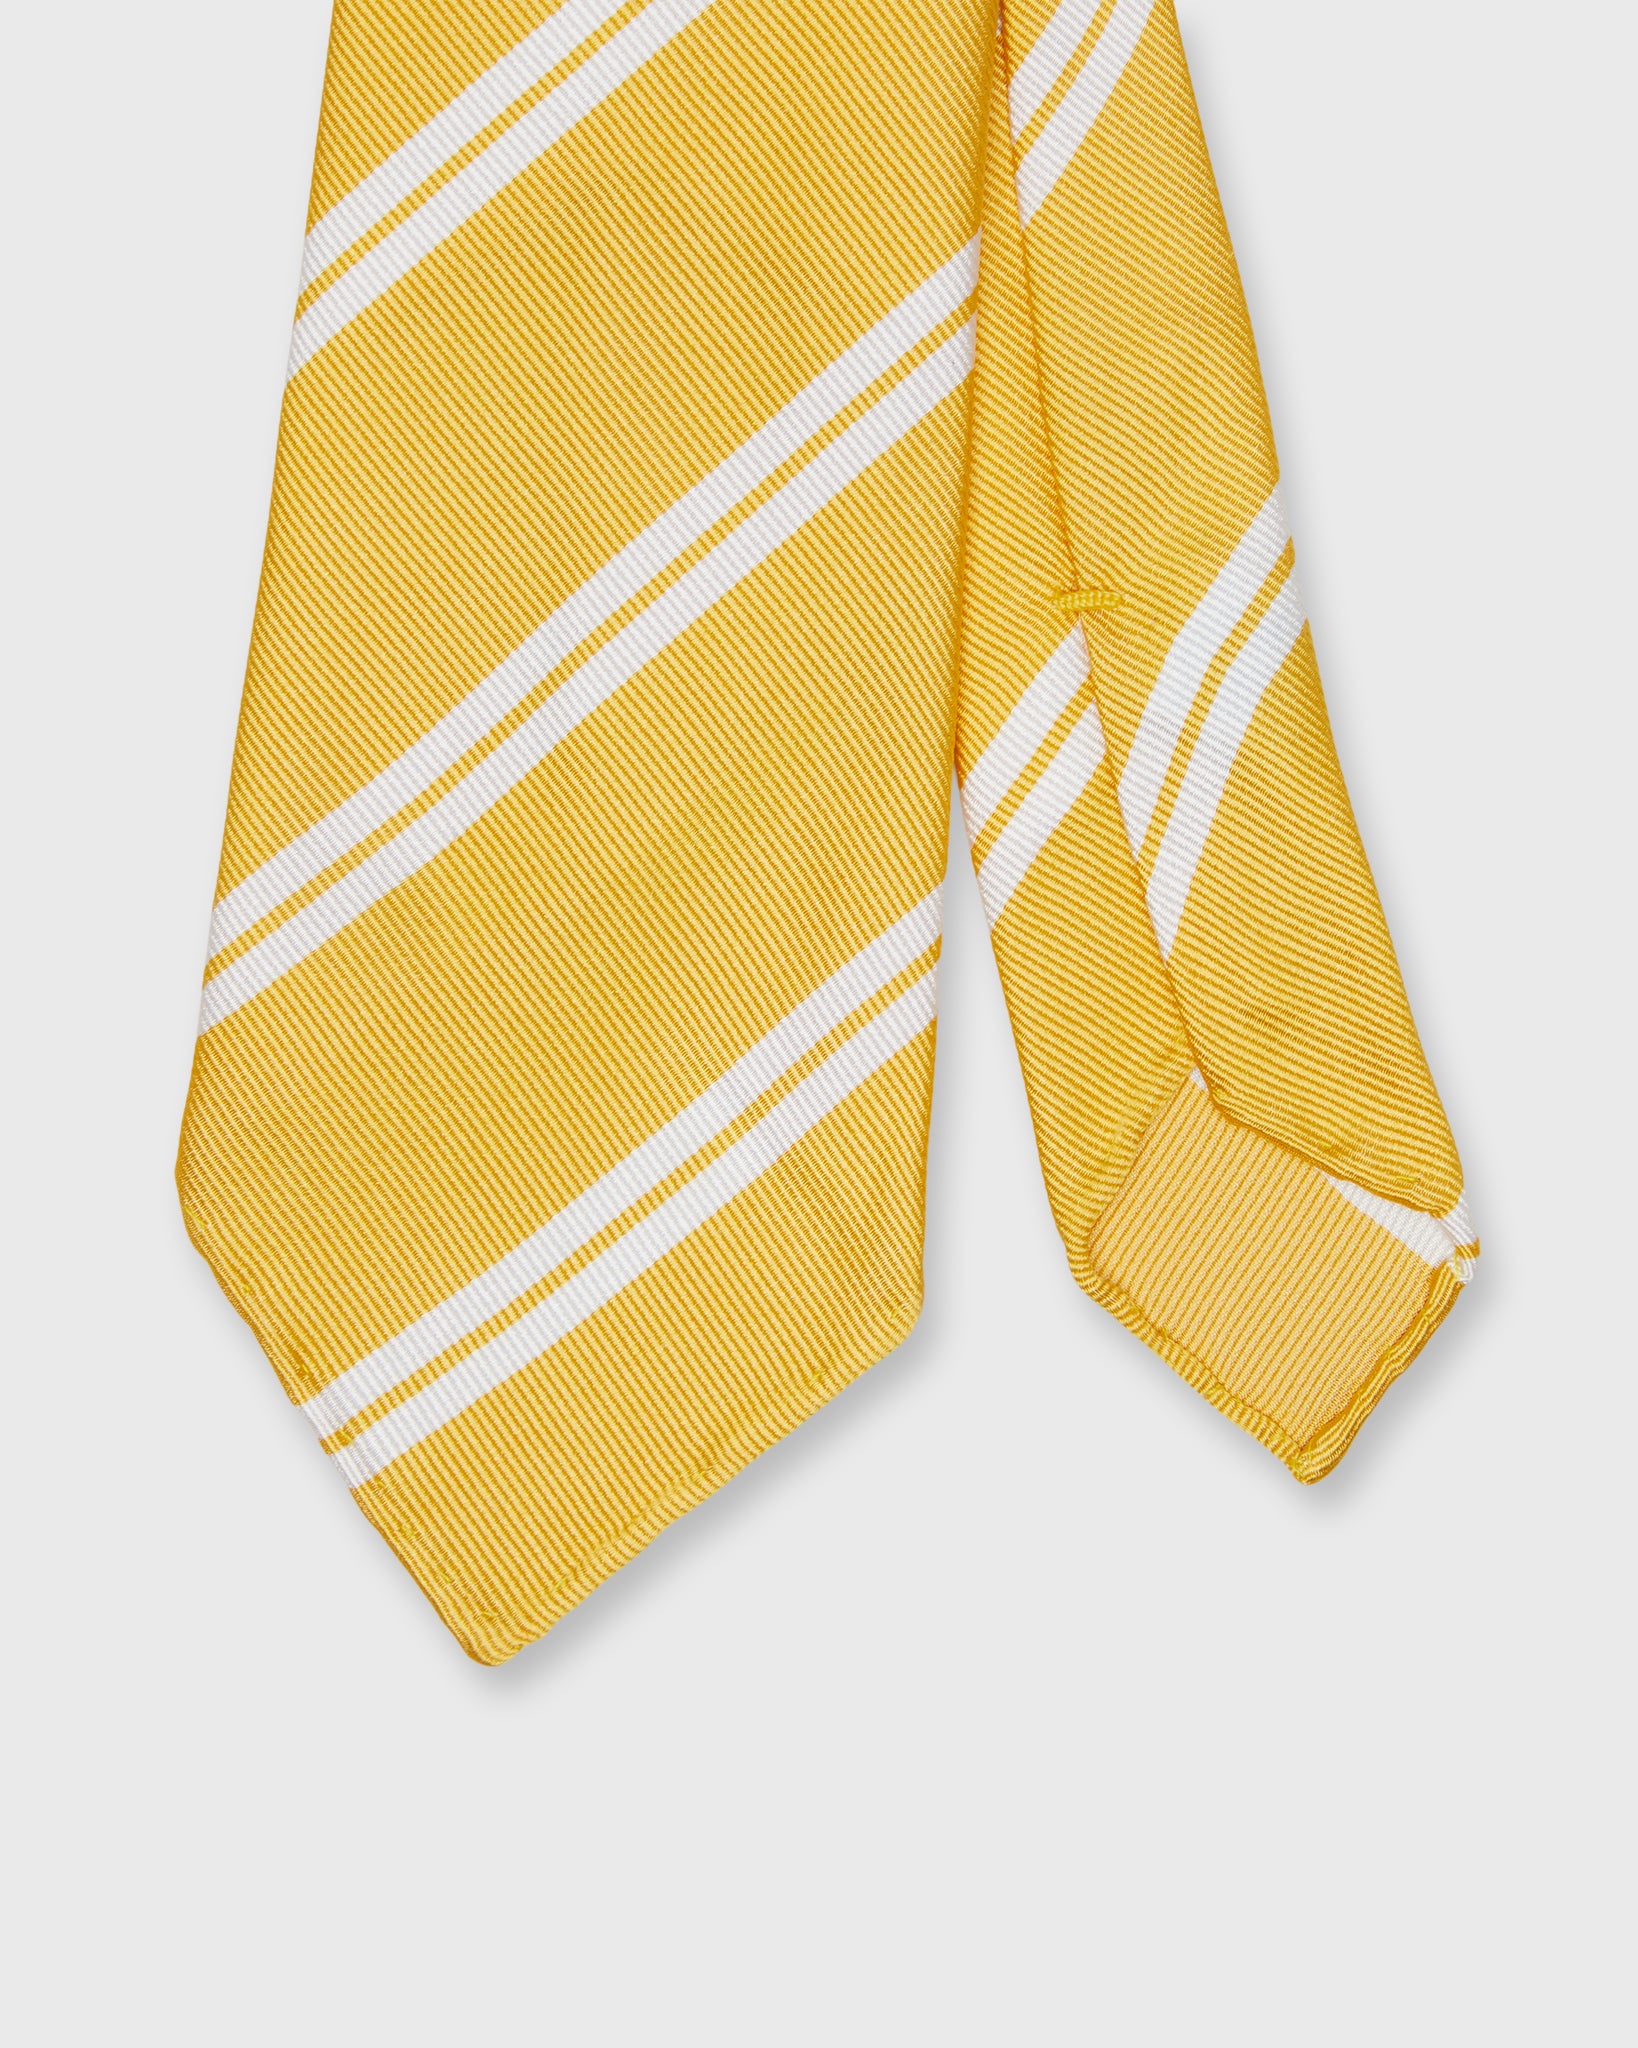 Silk Woven Tie in Butter/White Double Stripe